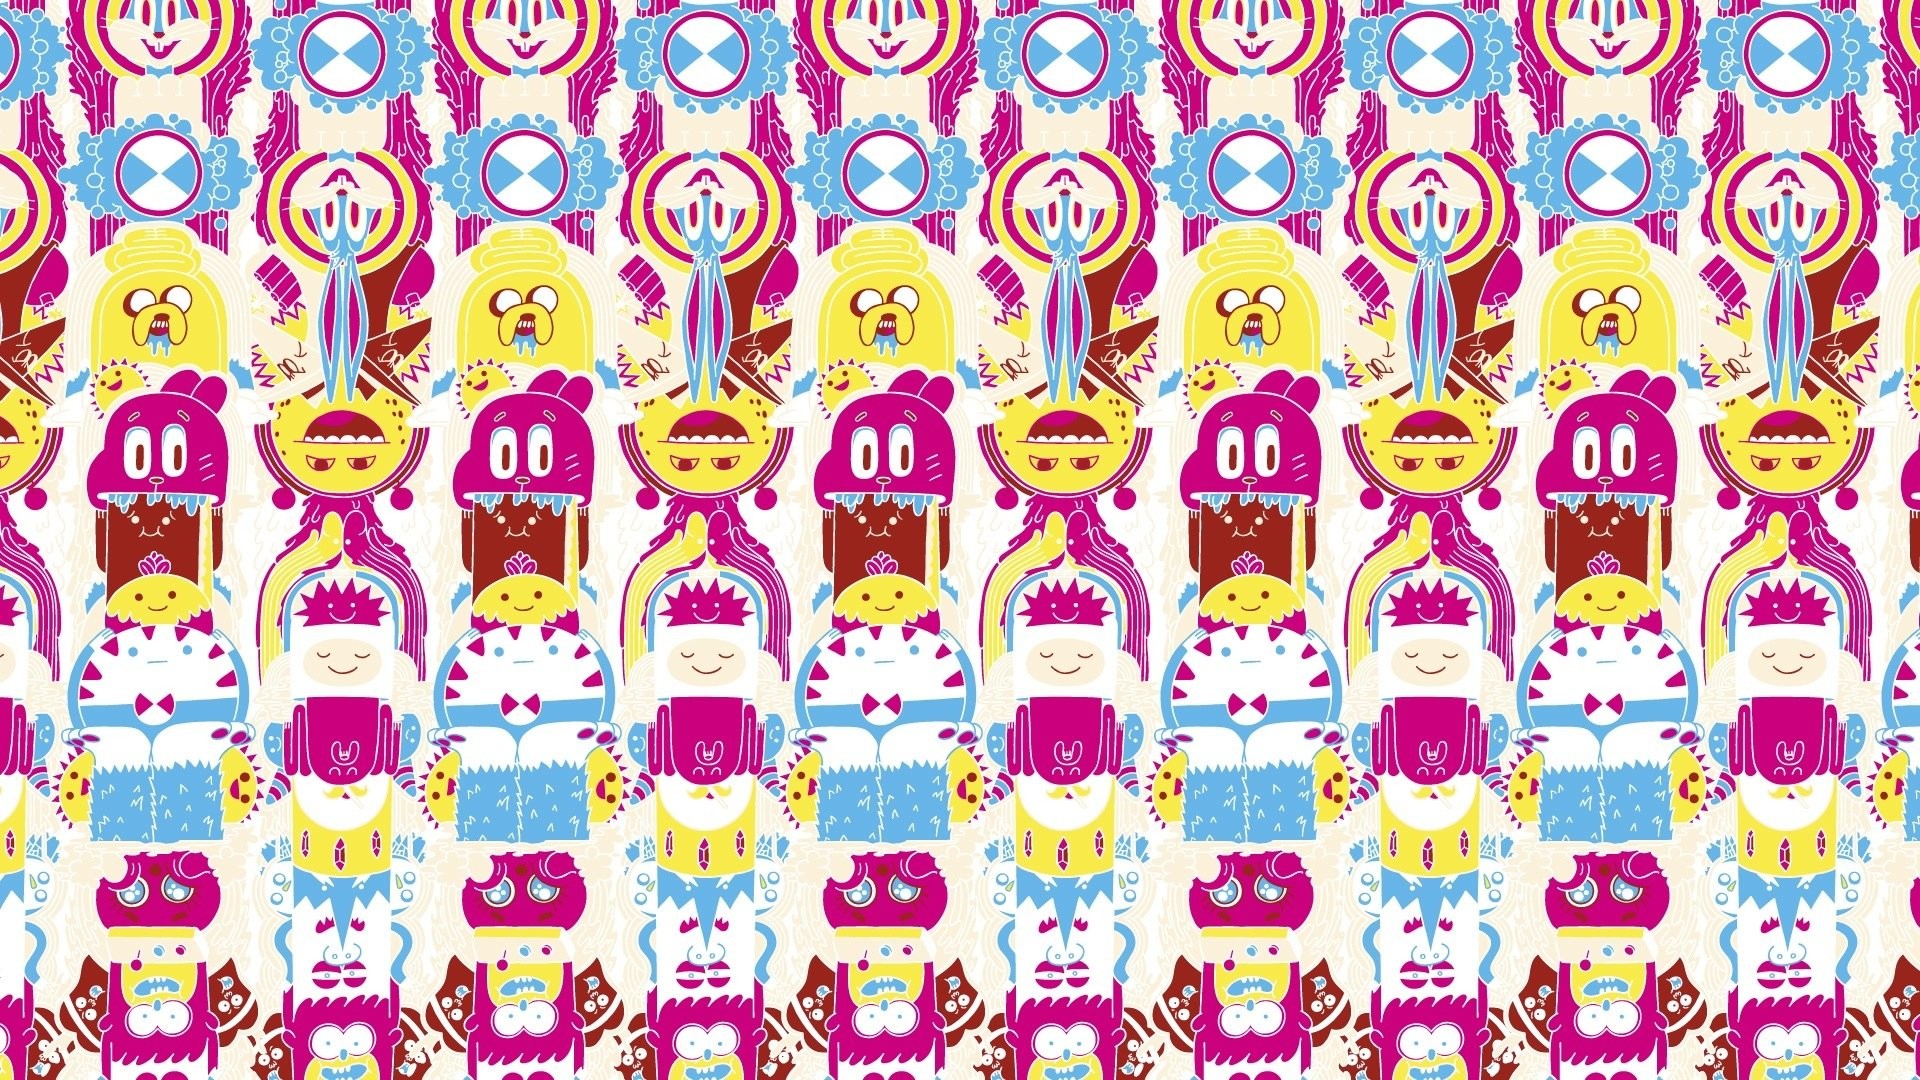 1920x1080 Cartoon Network Wallpaper Adventure Time 842496 ...